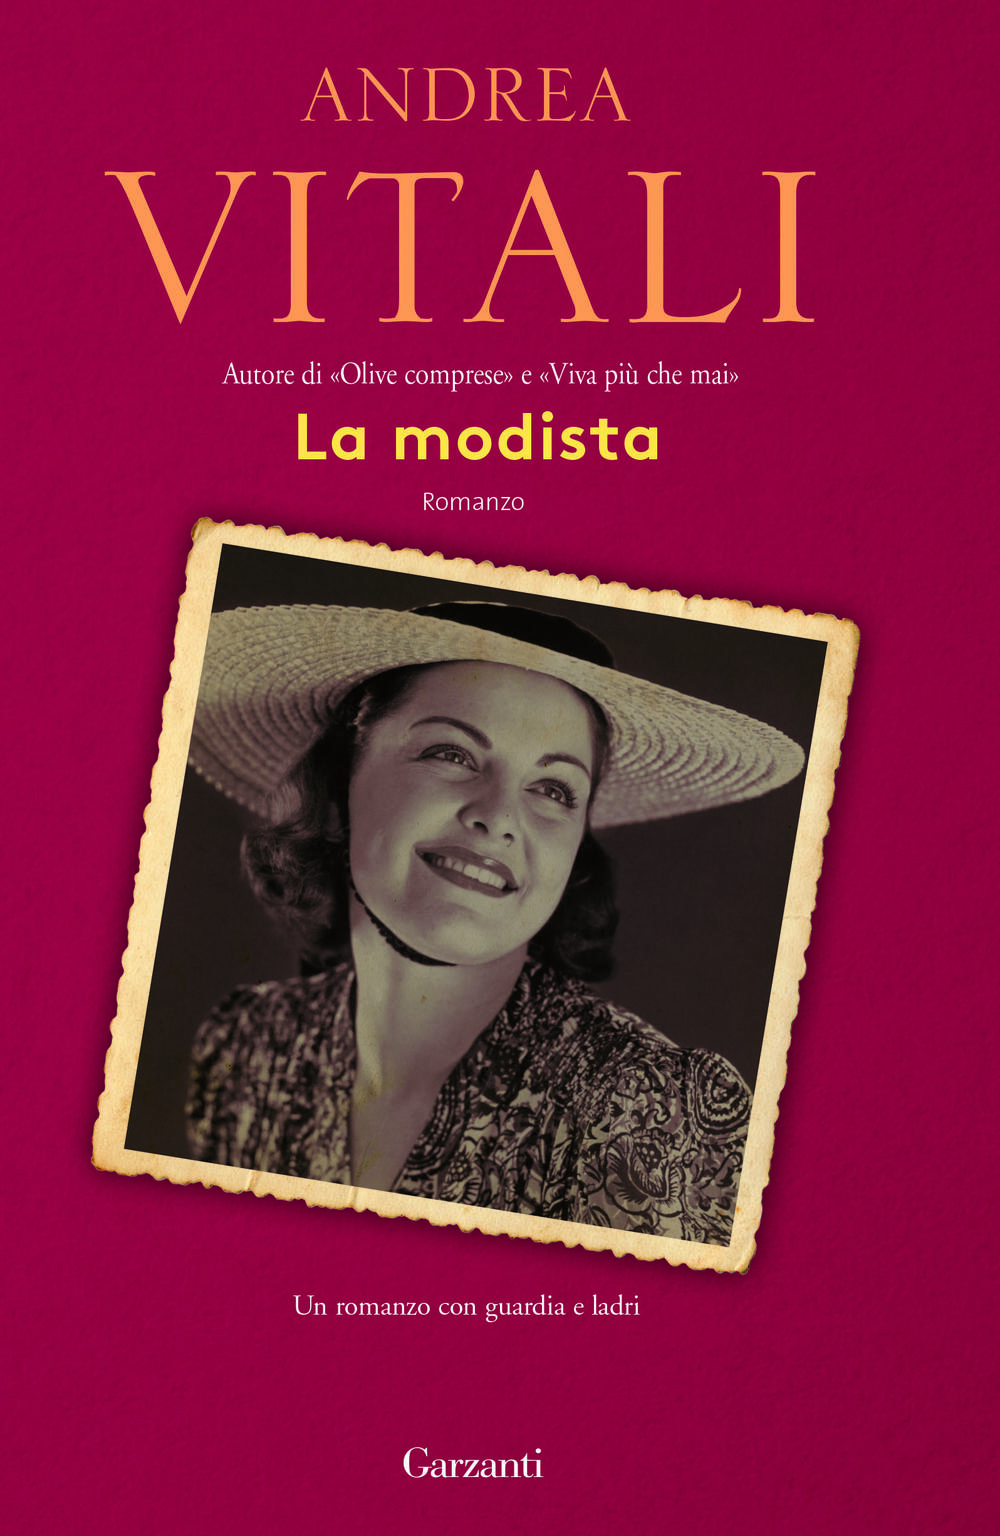 Andrea Vitali: Libri dell'autore in vendita online